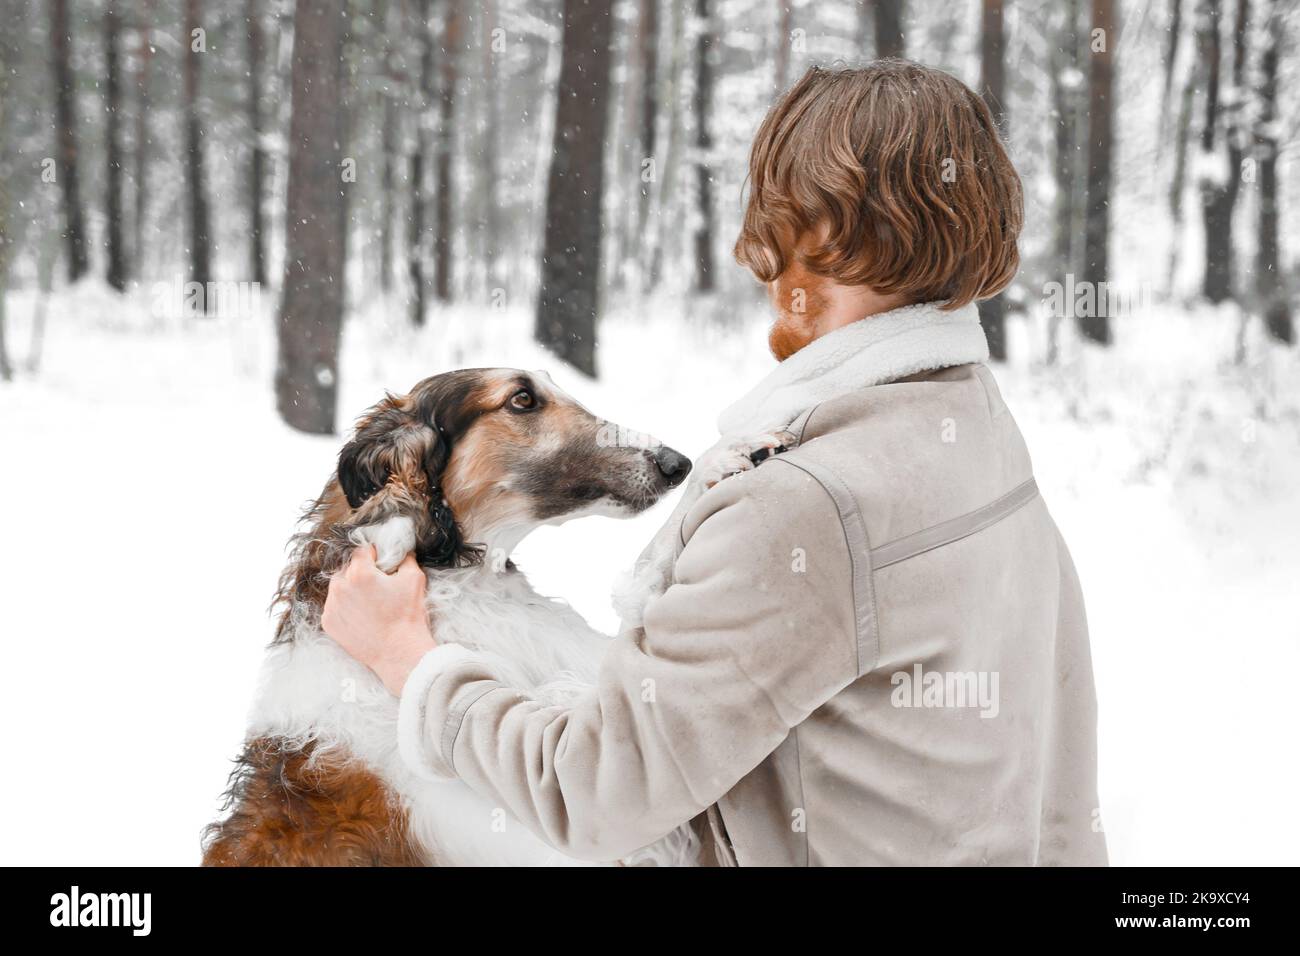 Jeune homme beau dans la neige froide hiver gel forêt marchant avec un animal de compagnie, chien de chasse race russe borzoi. Sighthound, propriétaire de wolfdrier. S'amuser, l Banque D'Images